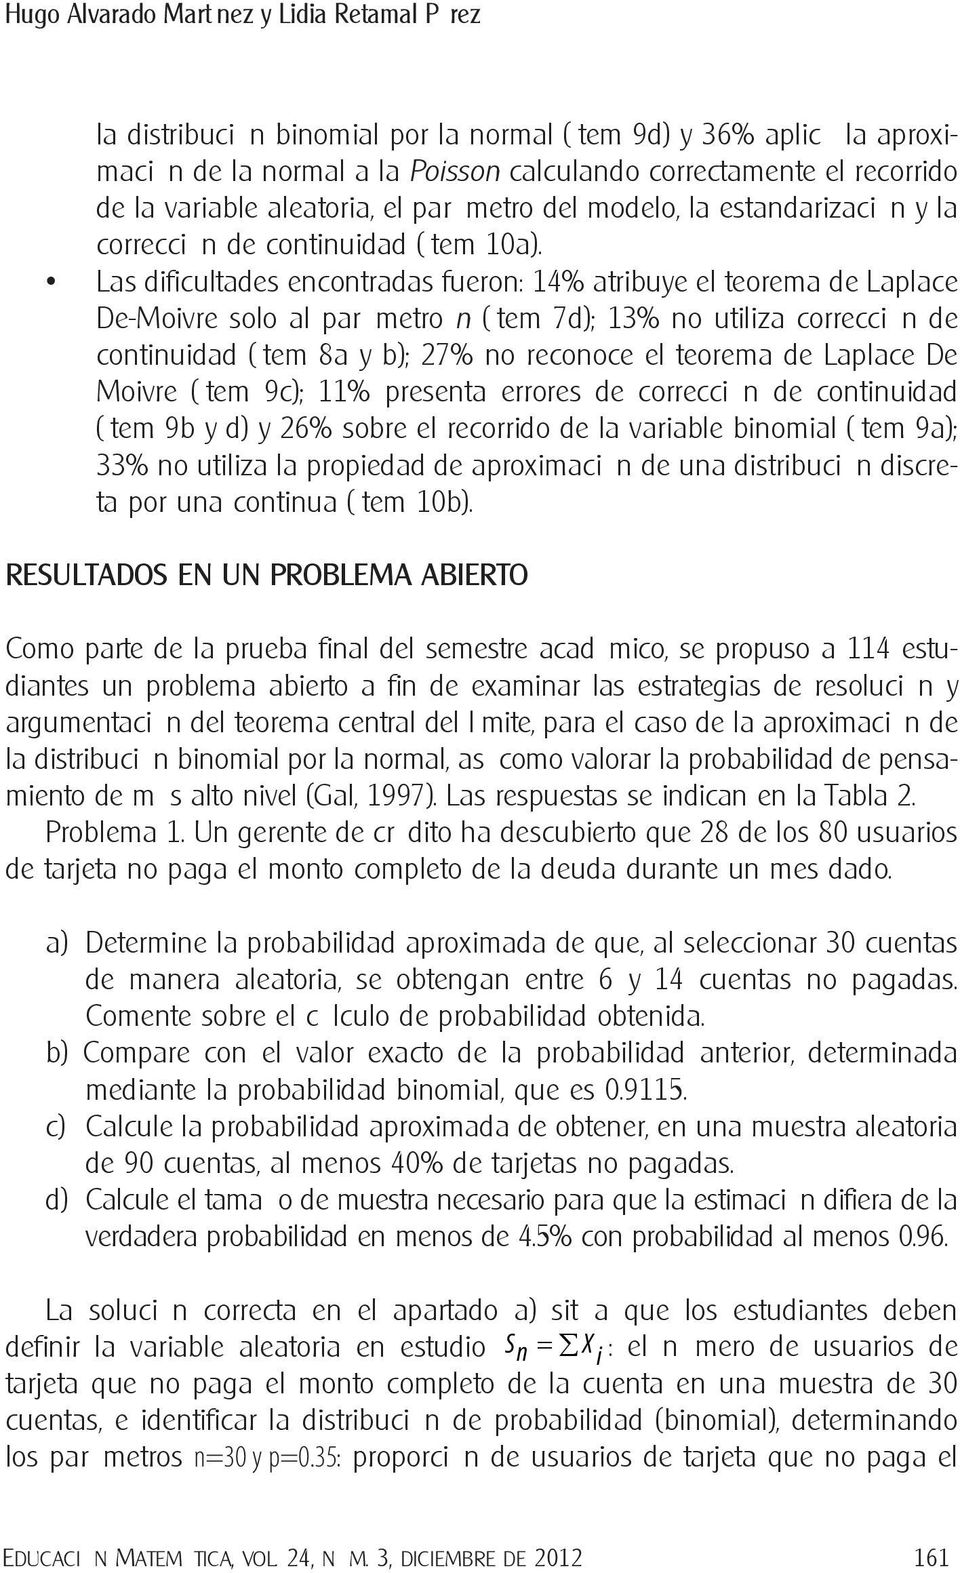 Las dificultades encontradas fueron: 14% atribuye el teorema de Laplace De-Moivre solo al parámetro n (ítem 7d); 13% no utiliza corrección de continuidad (ítem 8a y b); 27% no reconoce el teorema de